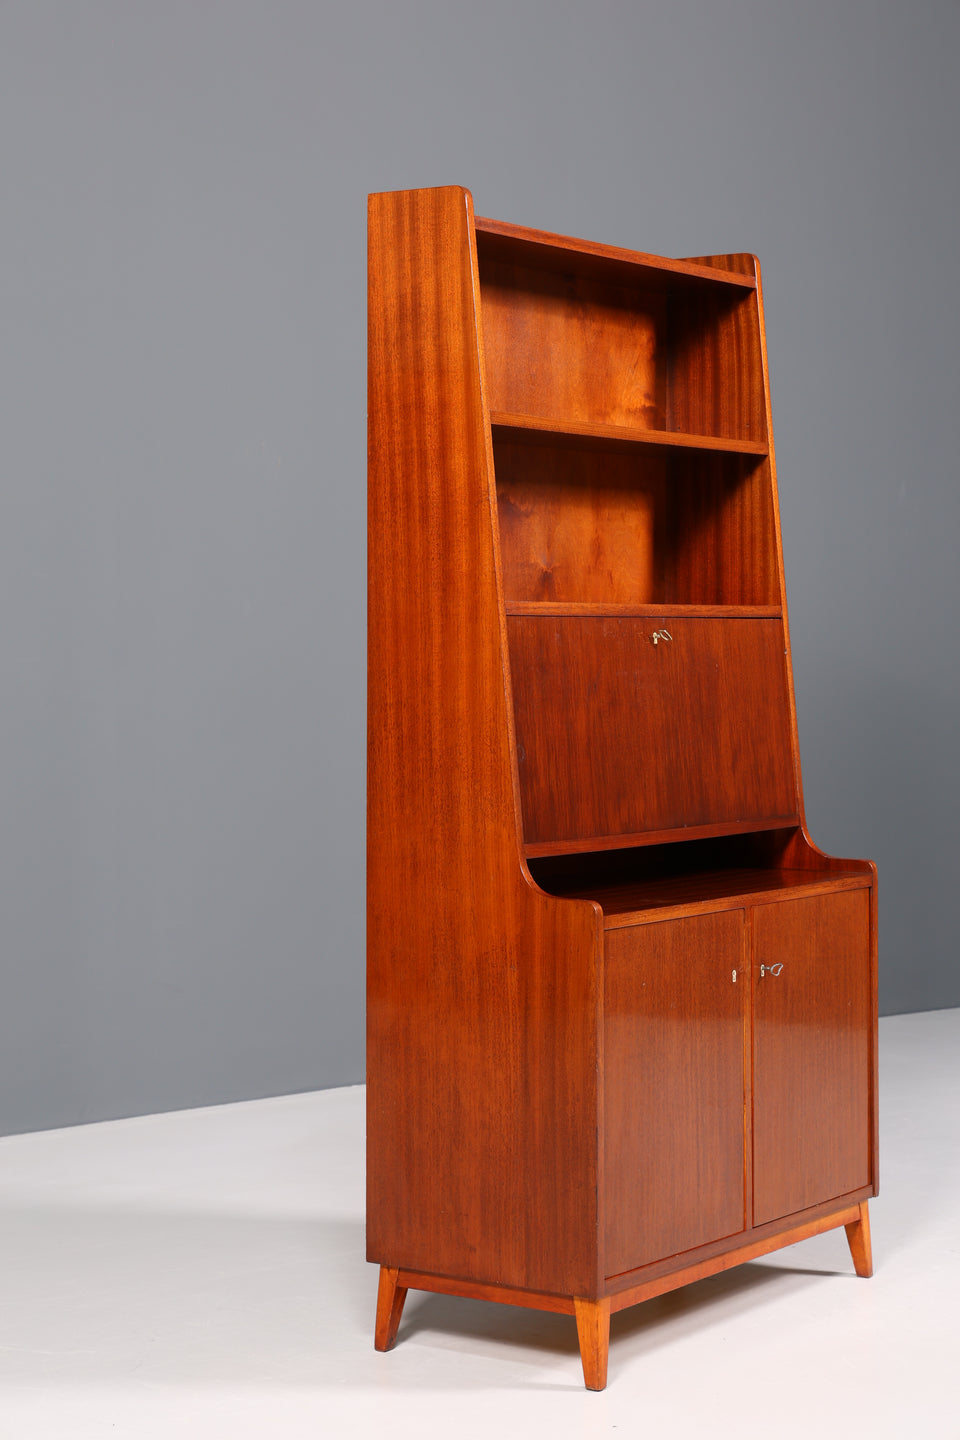 Traumhafter Mid Century Schrank Sekretär Bücherregal Vintage Highboard Retro Holz Regal 60er Jahre